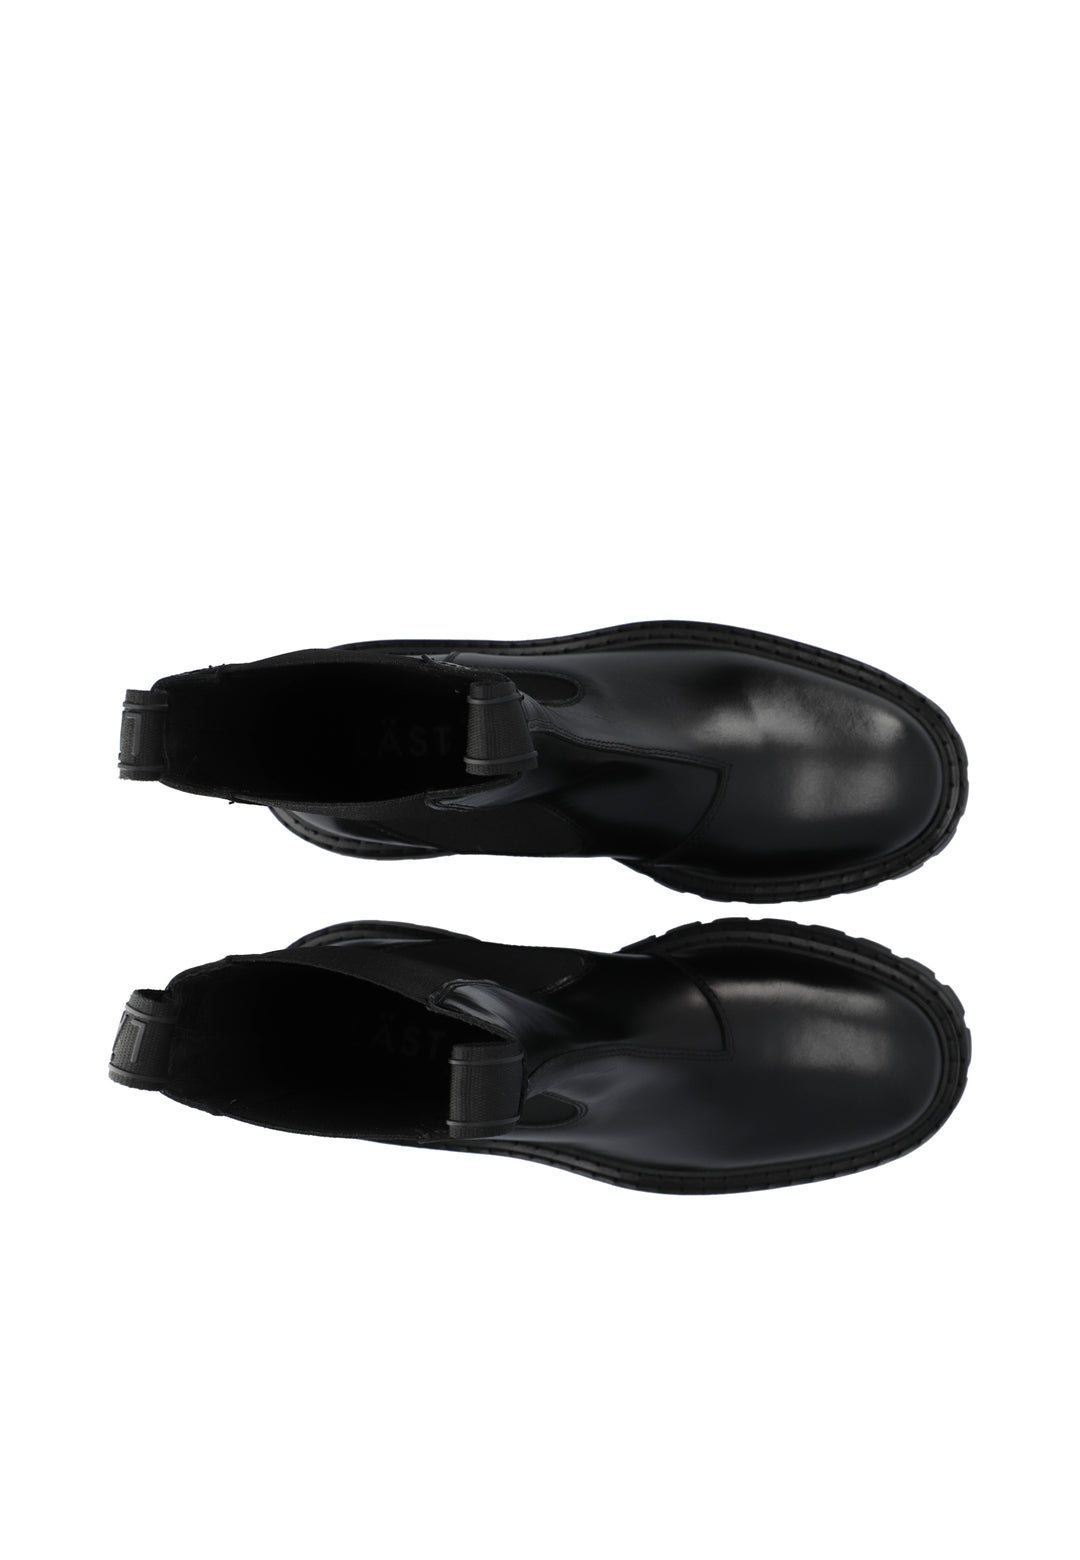 LÄST Stella - Leather - Black Ankle Boots Black